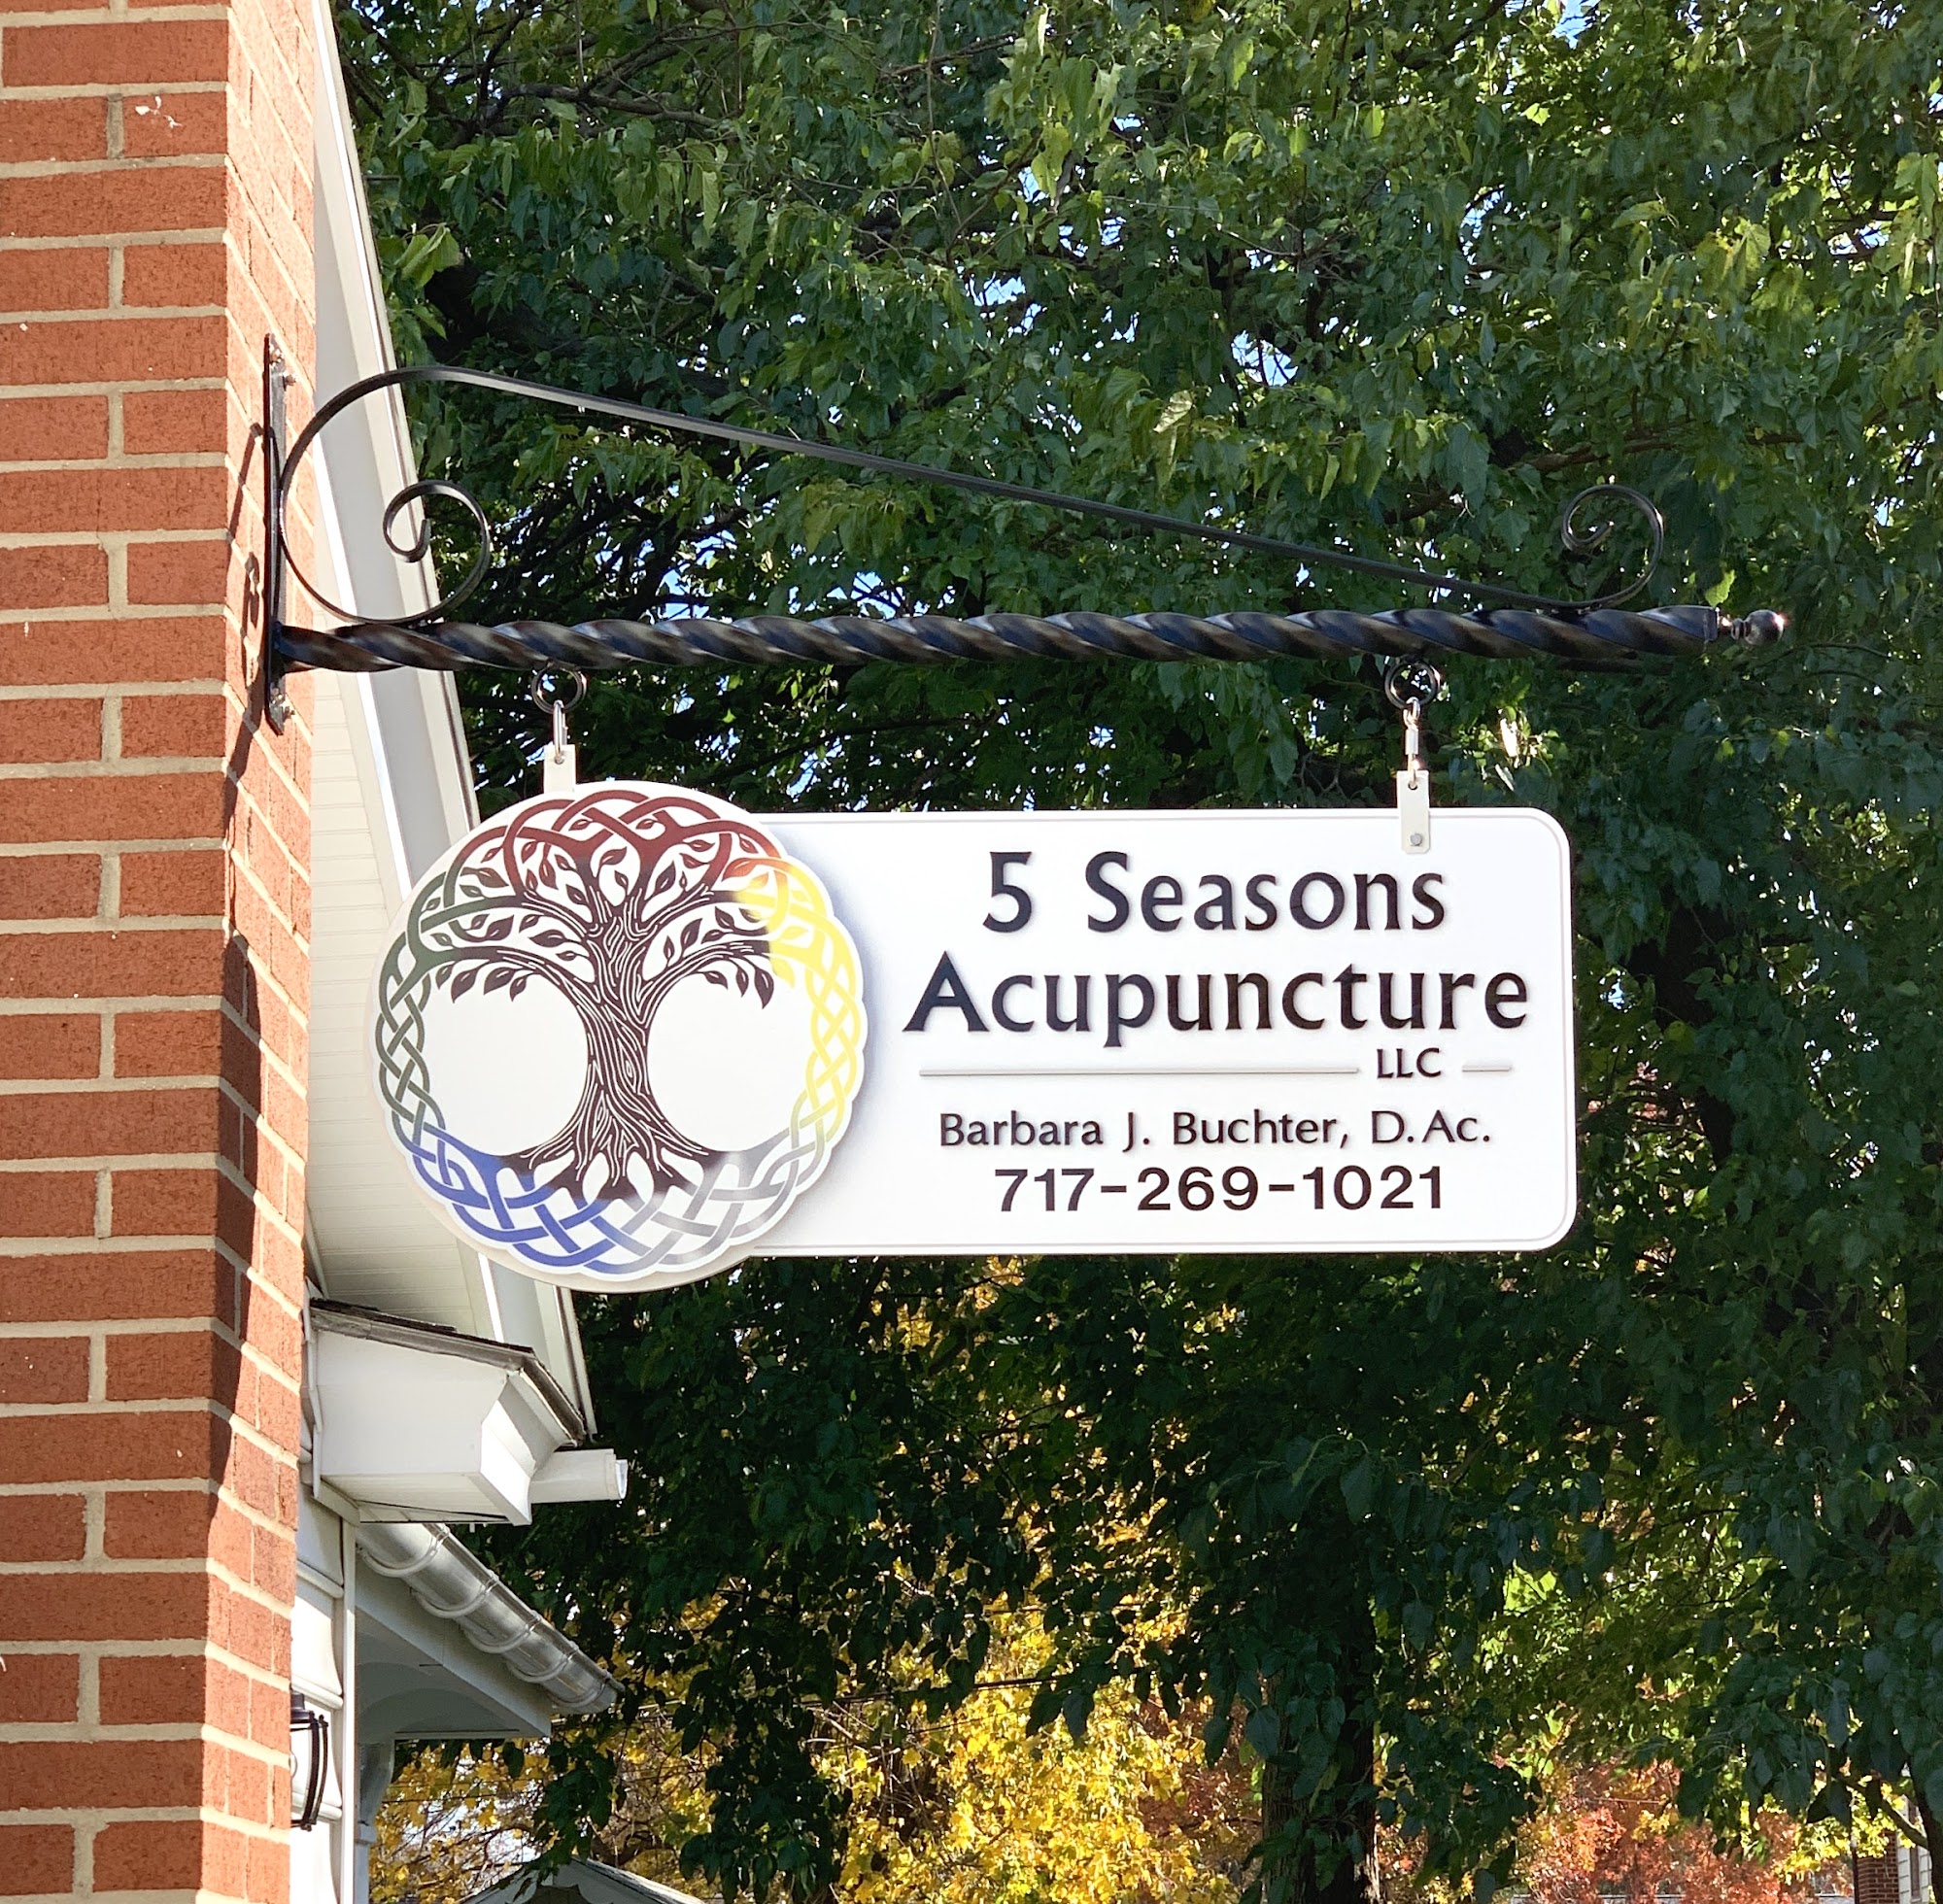 5 Seasons Acupuncture LLC